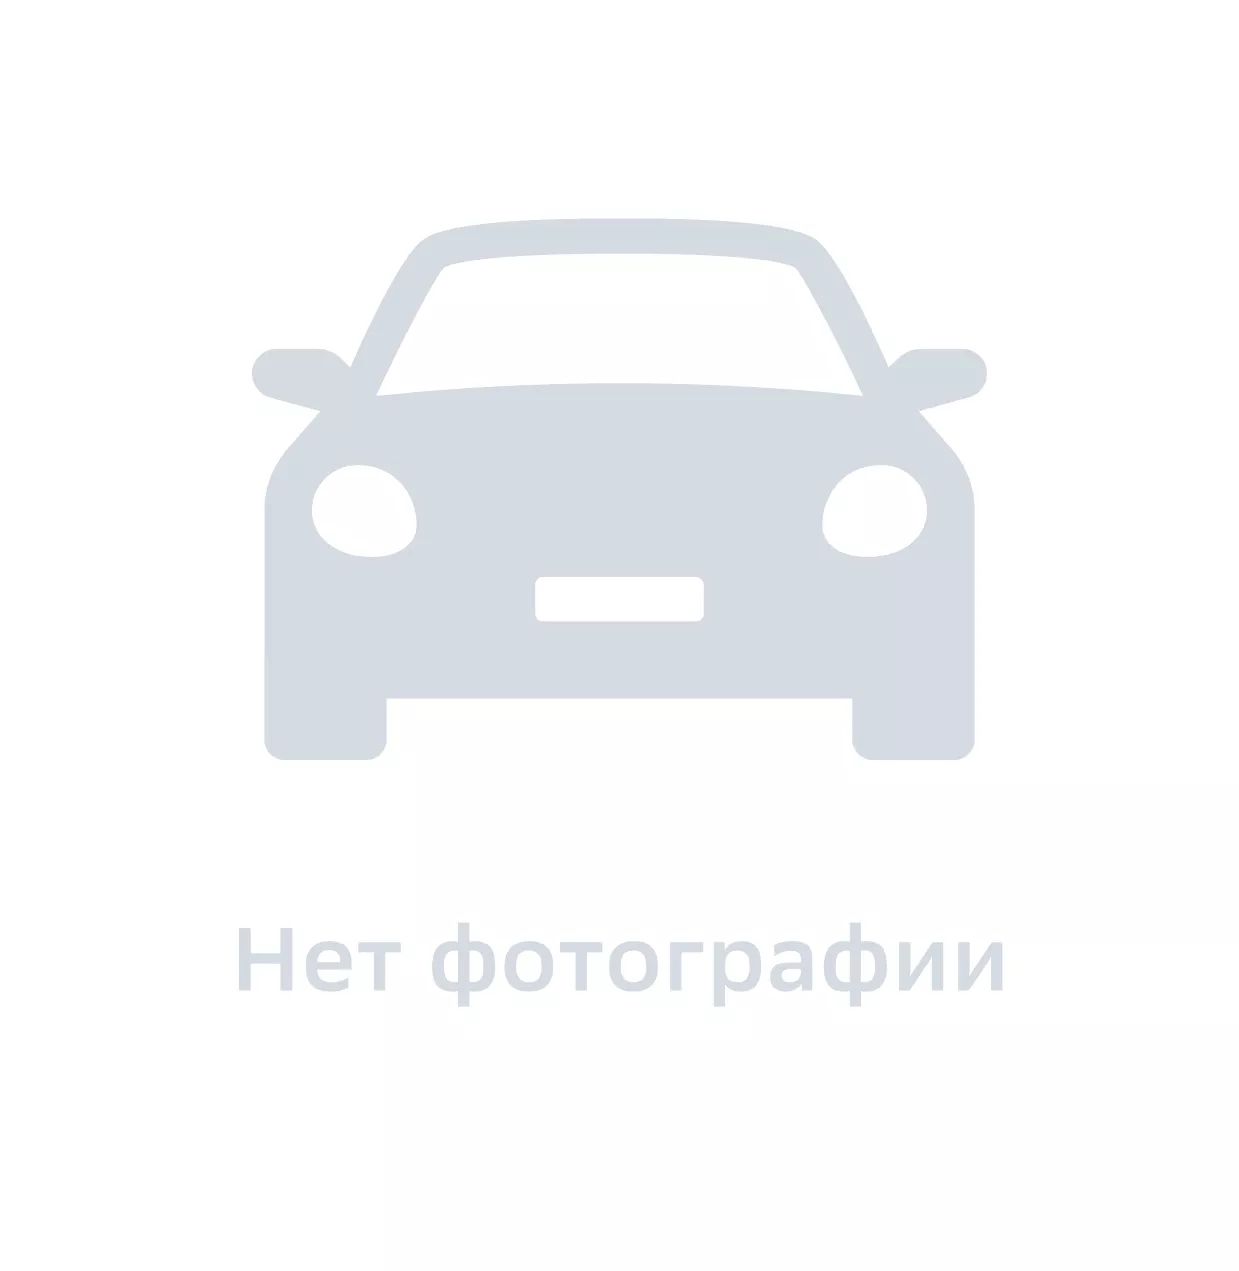 Болт автомобильный, GM DAT, арт. 94500400, цена за 1 шт.